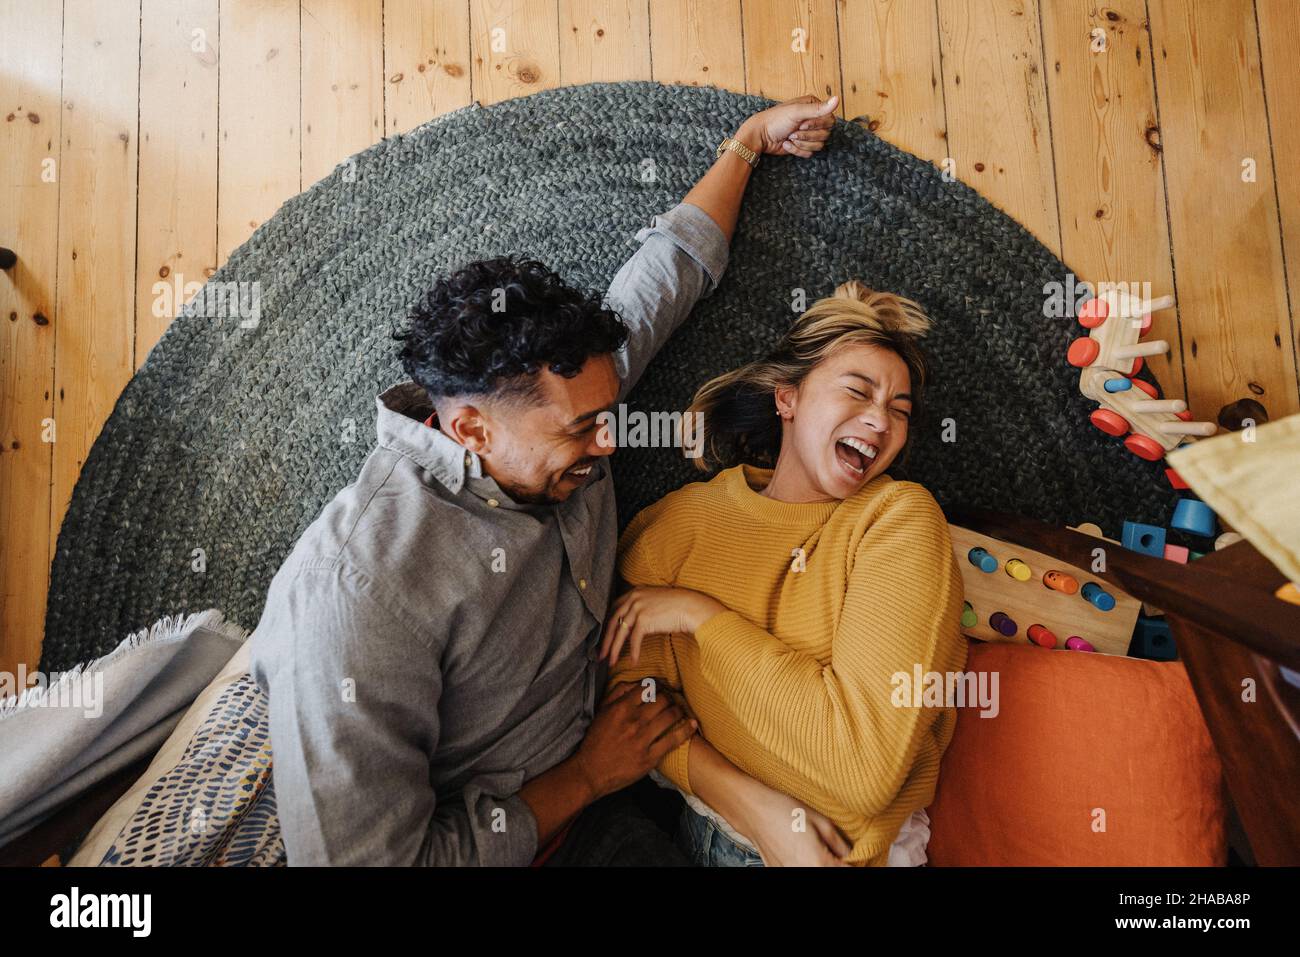 Blick aus der Perspektive eines Ehepaares, das fröhlich lacht, während es im Spielbereich ihrer Kinder liegt. Zwei junge Eltern, die zu Hause Spaß miteinander haben. Stockfoto